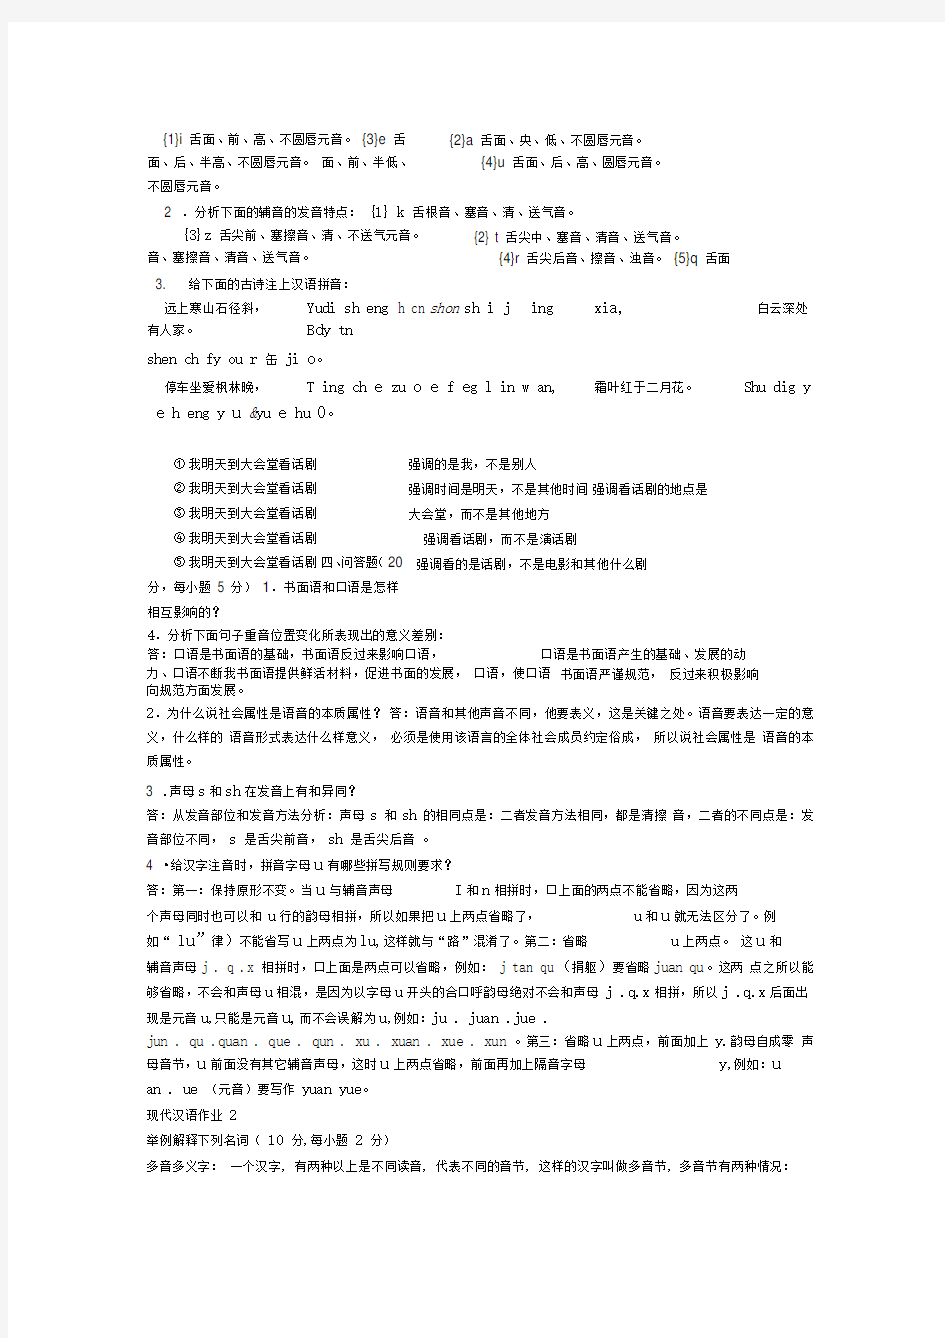 现代汉语1形成性考核册及答案打印版